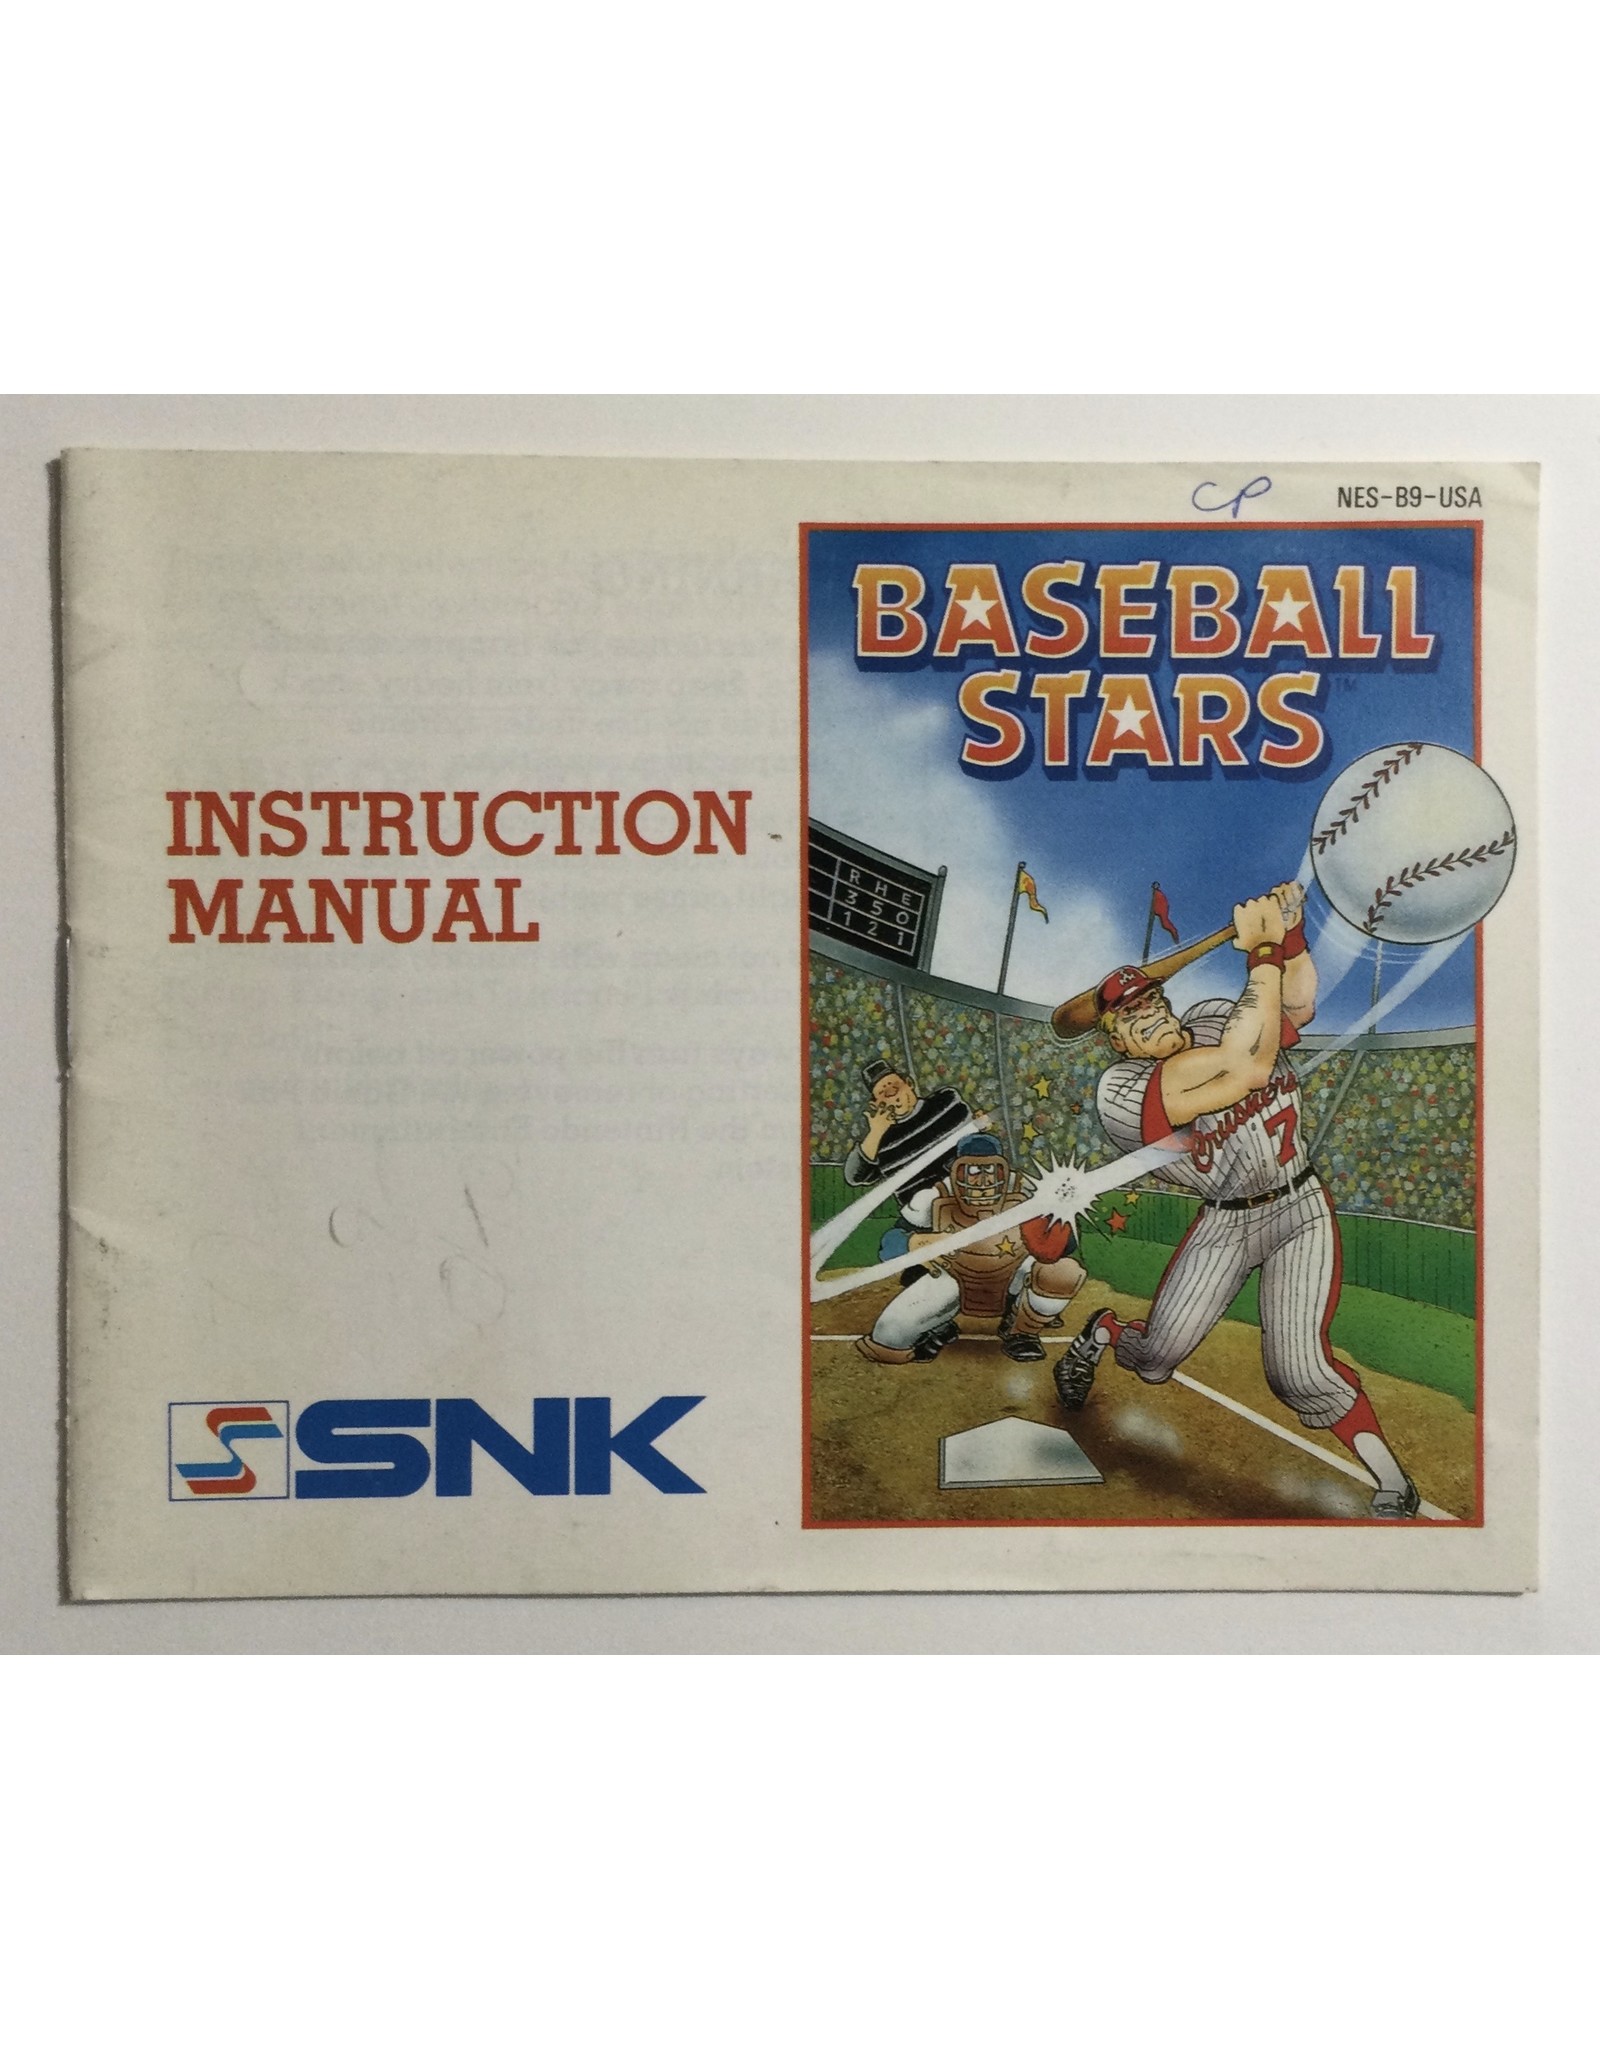 SNK Baseball Stars for Nintendo Entertainment system (NES)